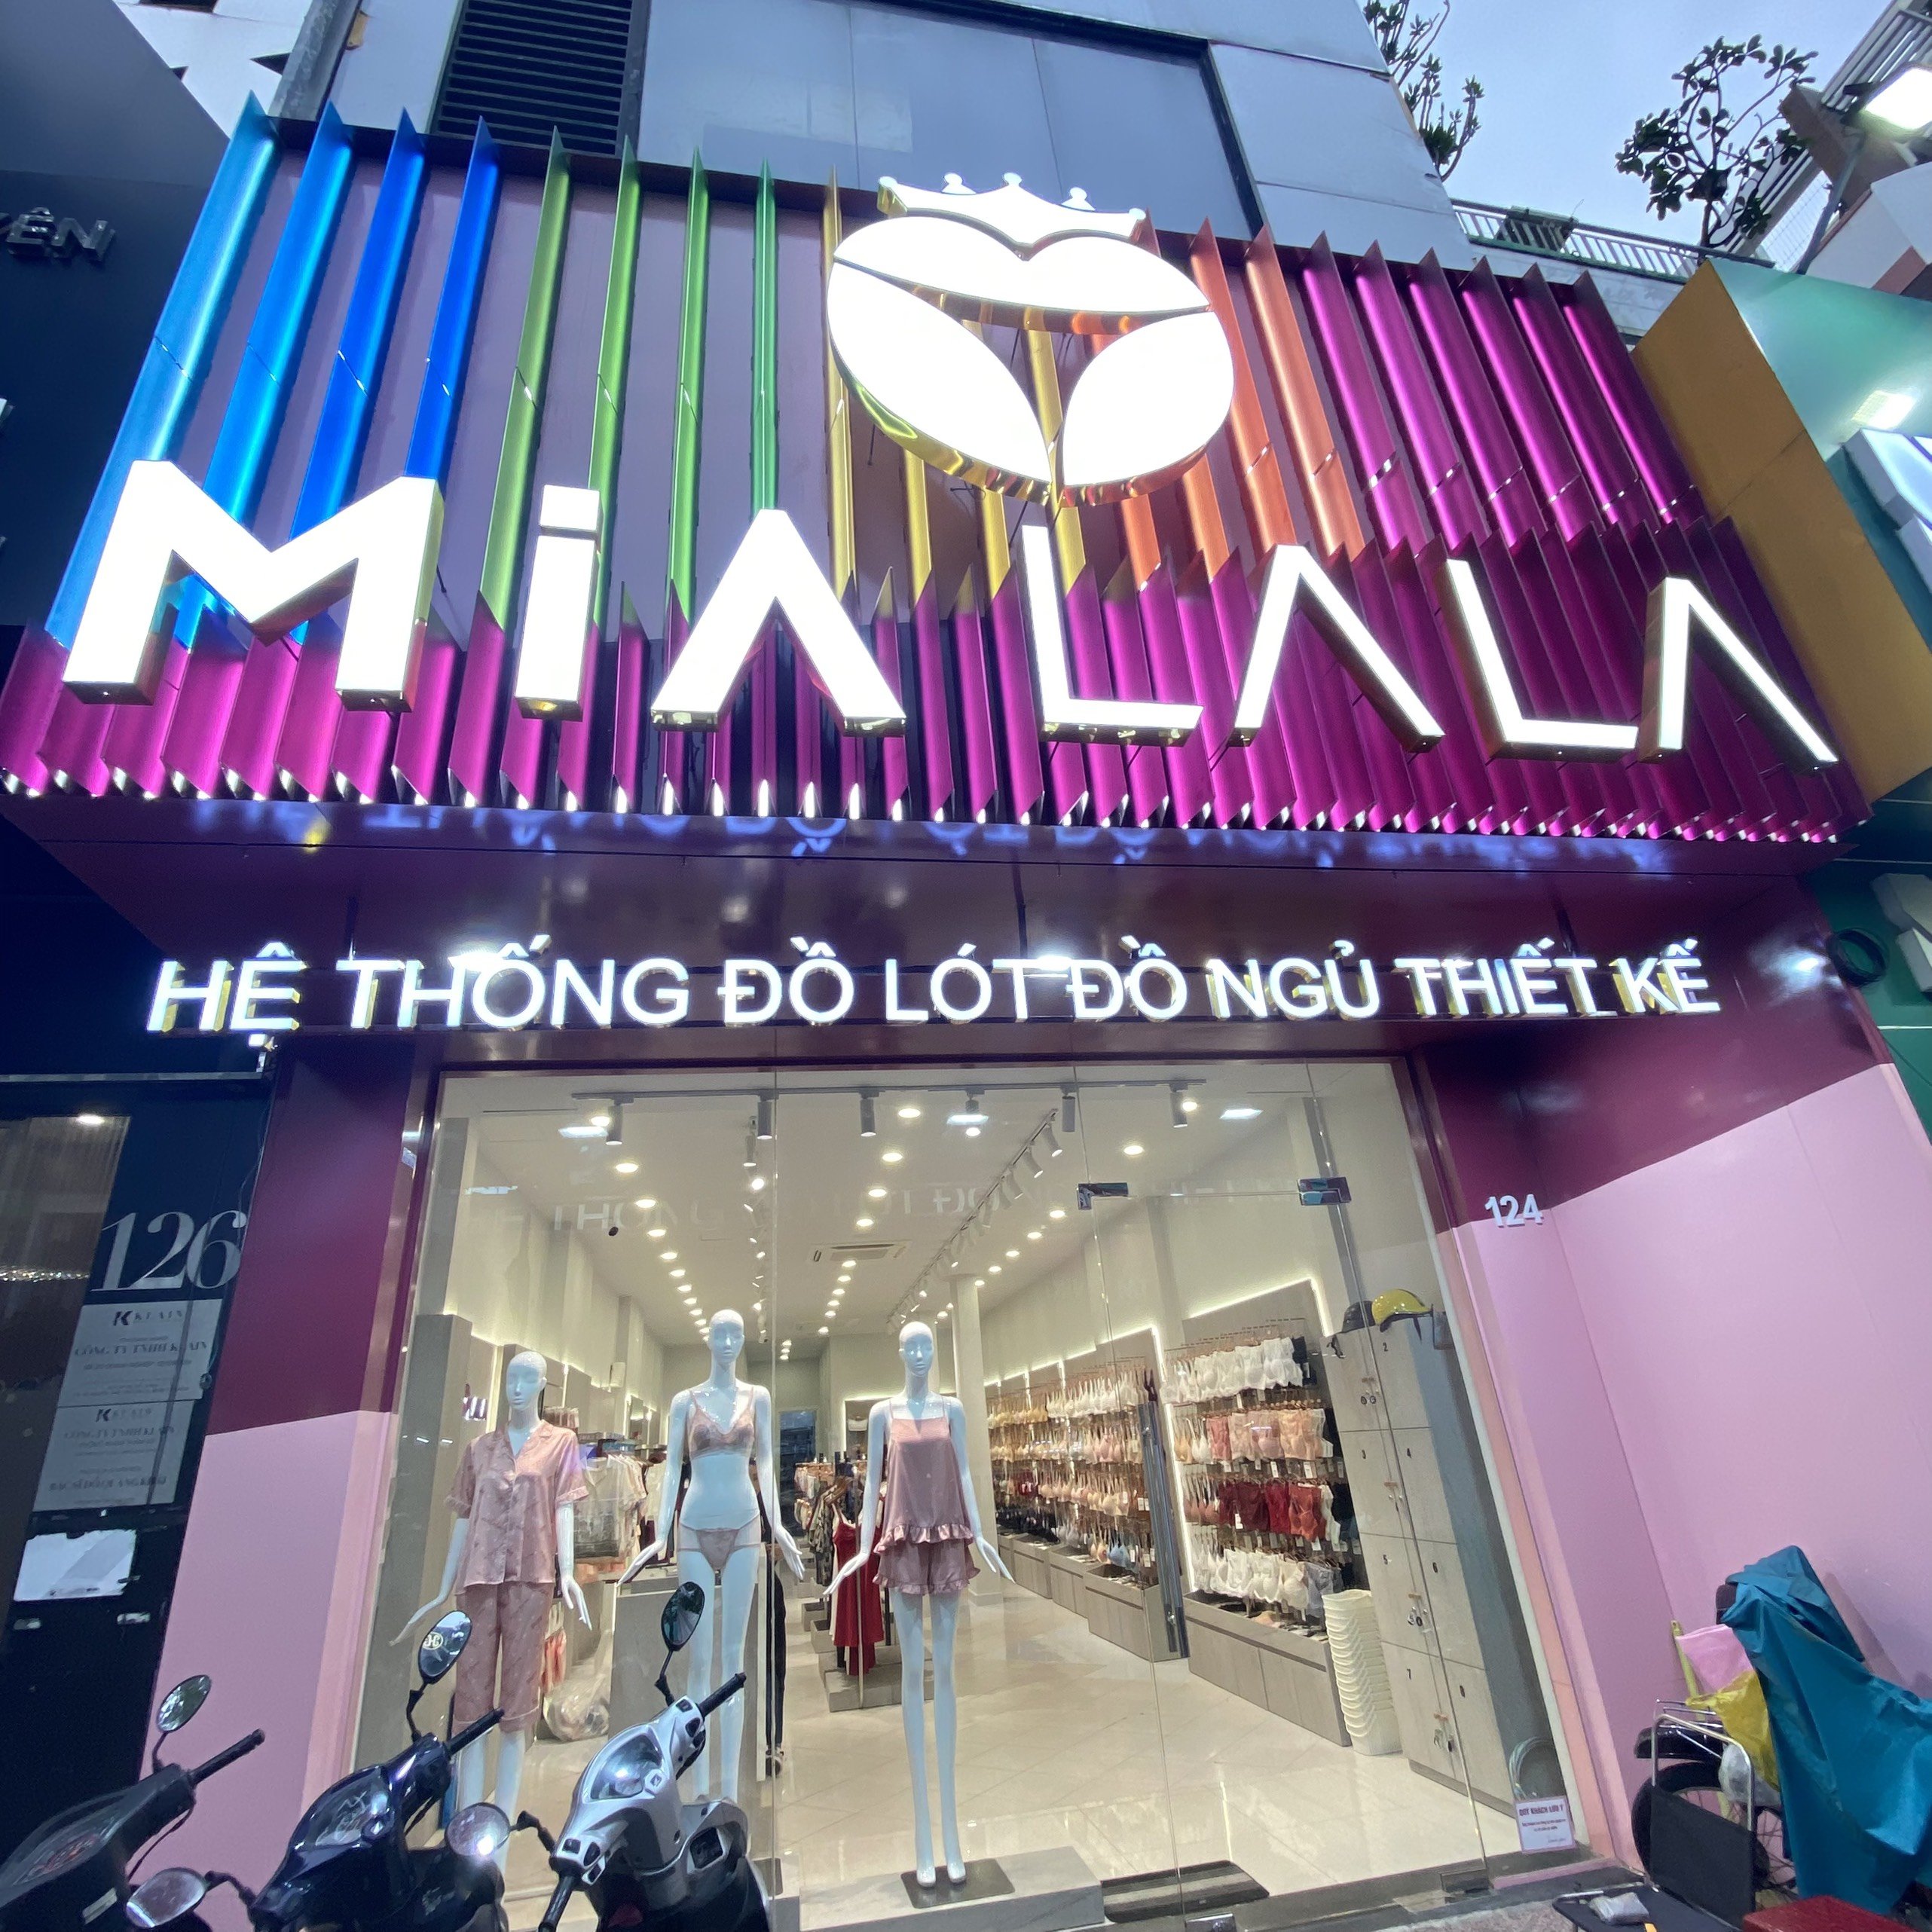 Shop đồ lót nào đường Nguyễn Trãi uy tín nhất?